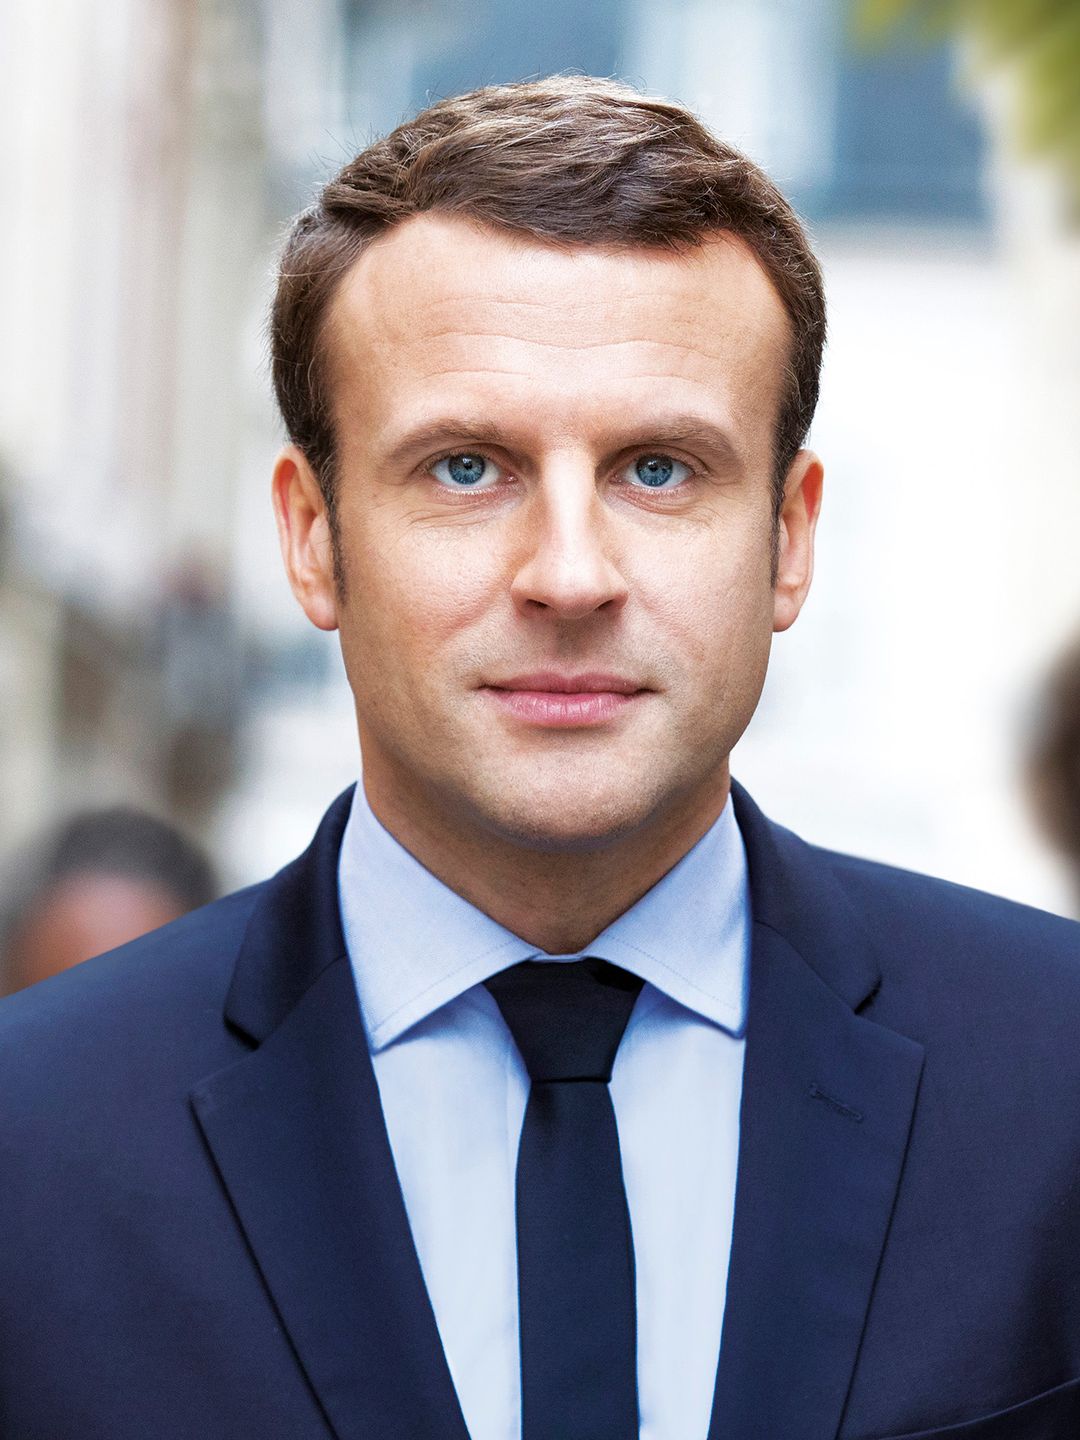 Emmanuel Macron siblings